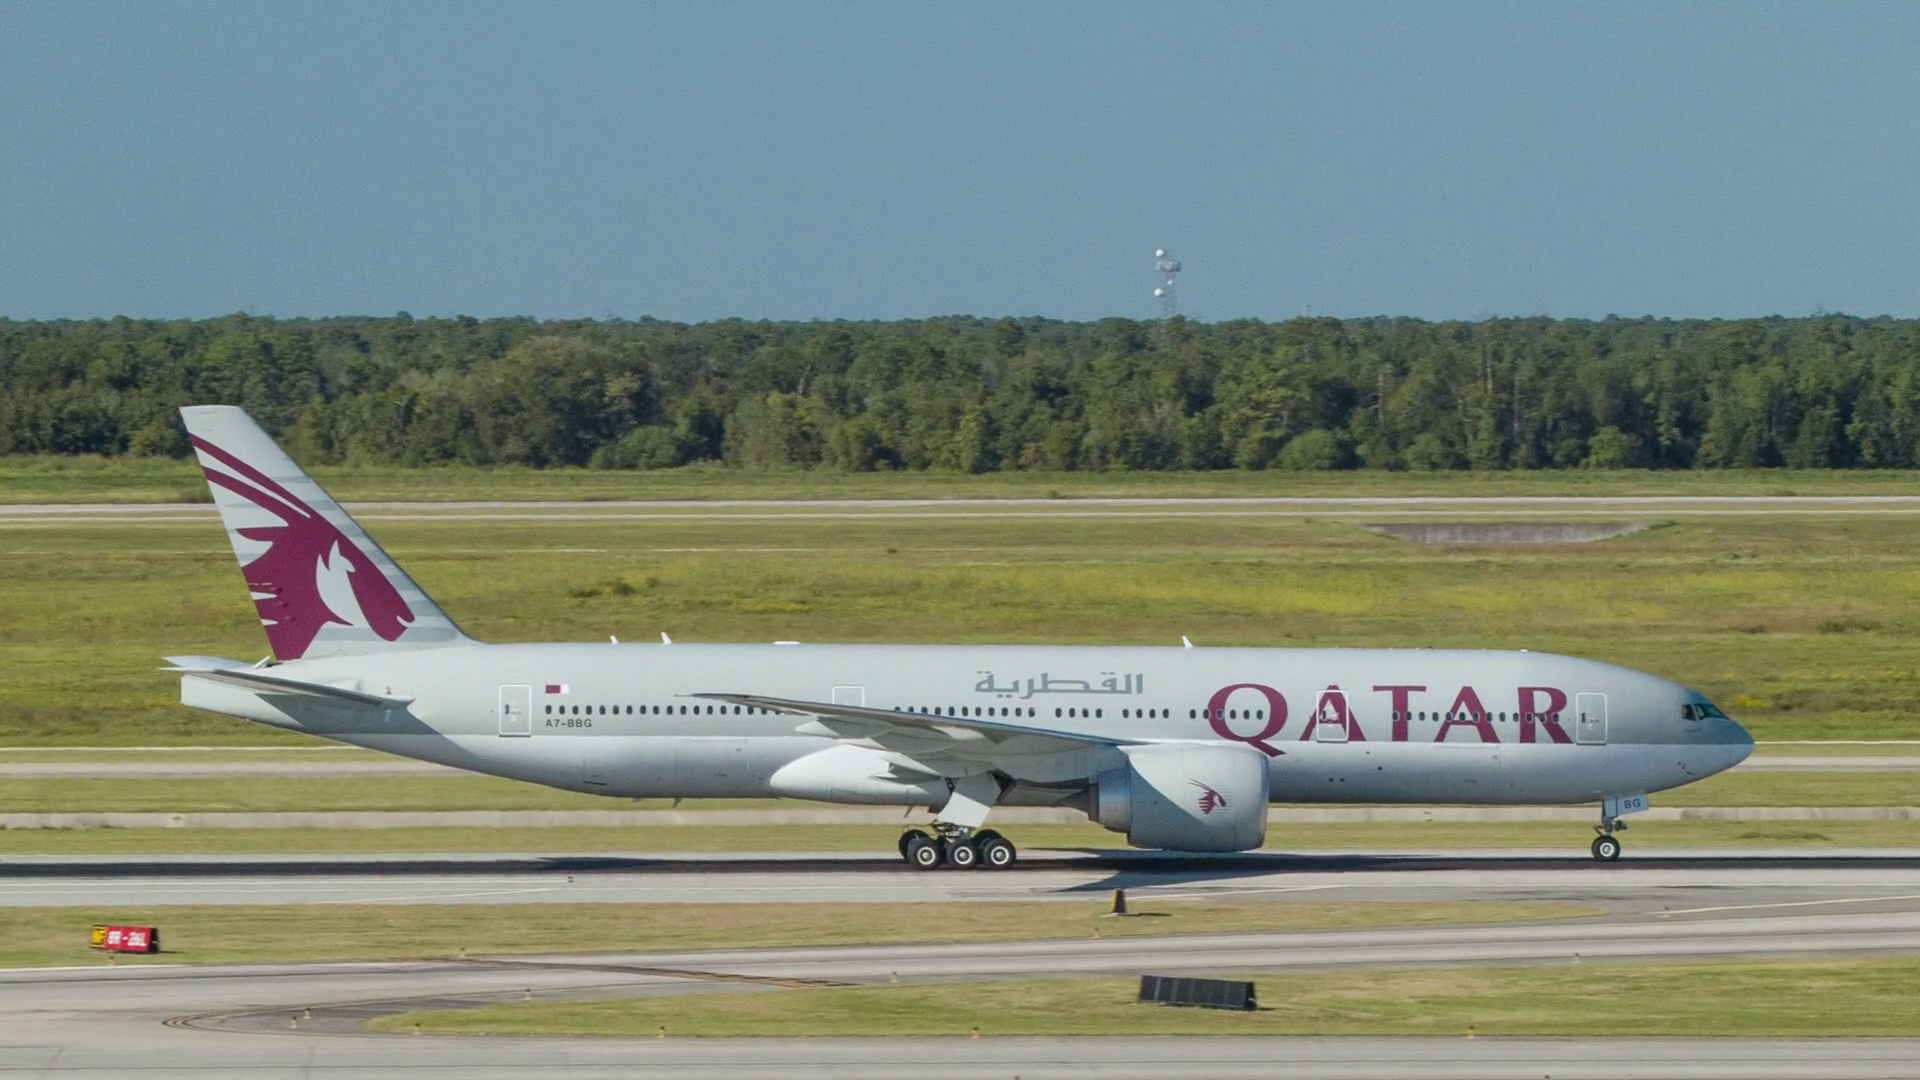 Qatar Airways Boeing 777 200 Commercial Passenger Airliner - Qatar Airways Boeing 777 , HD Wallpaper & Backgrounds